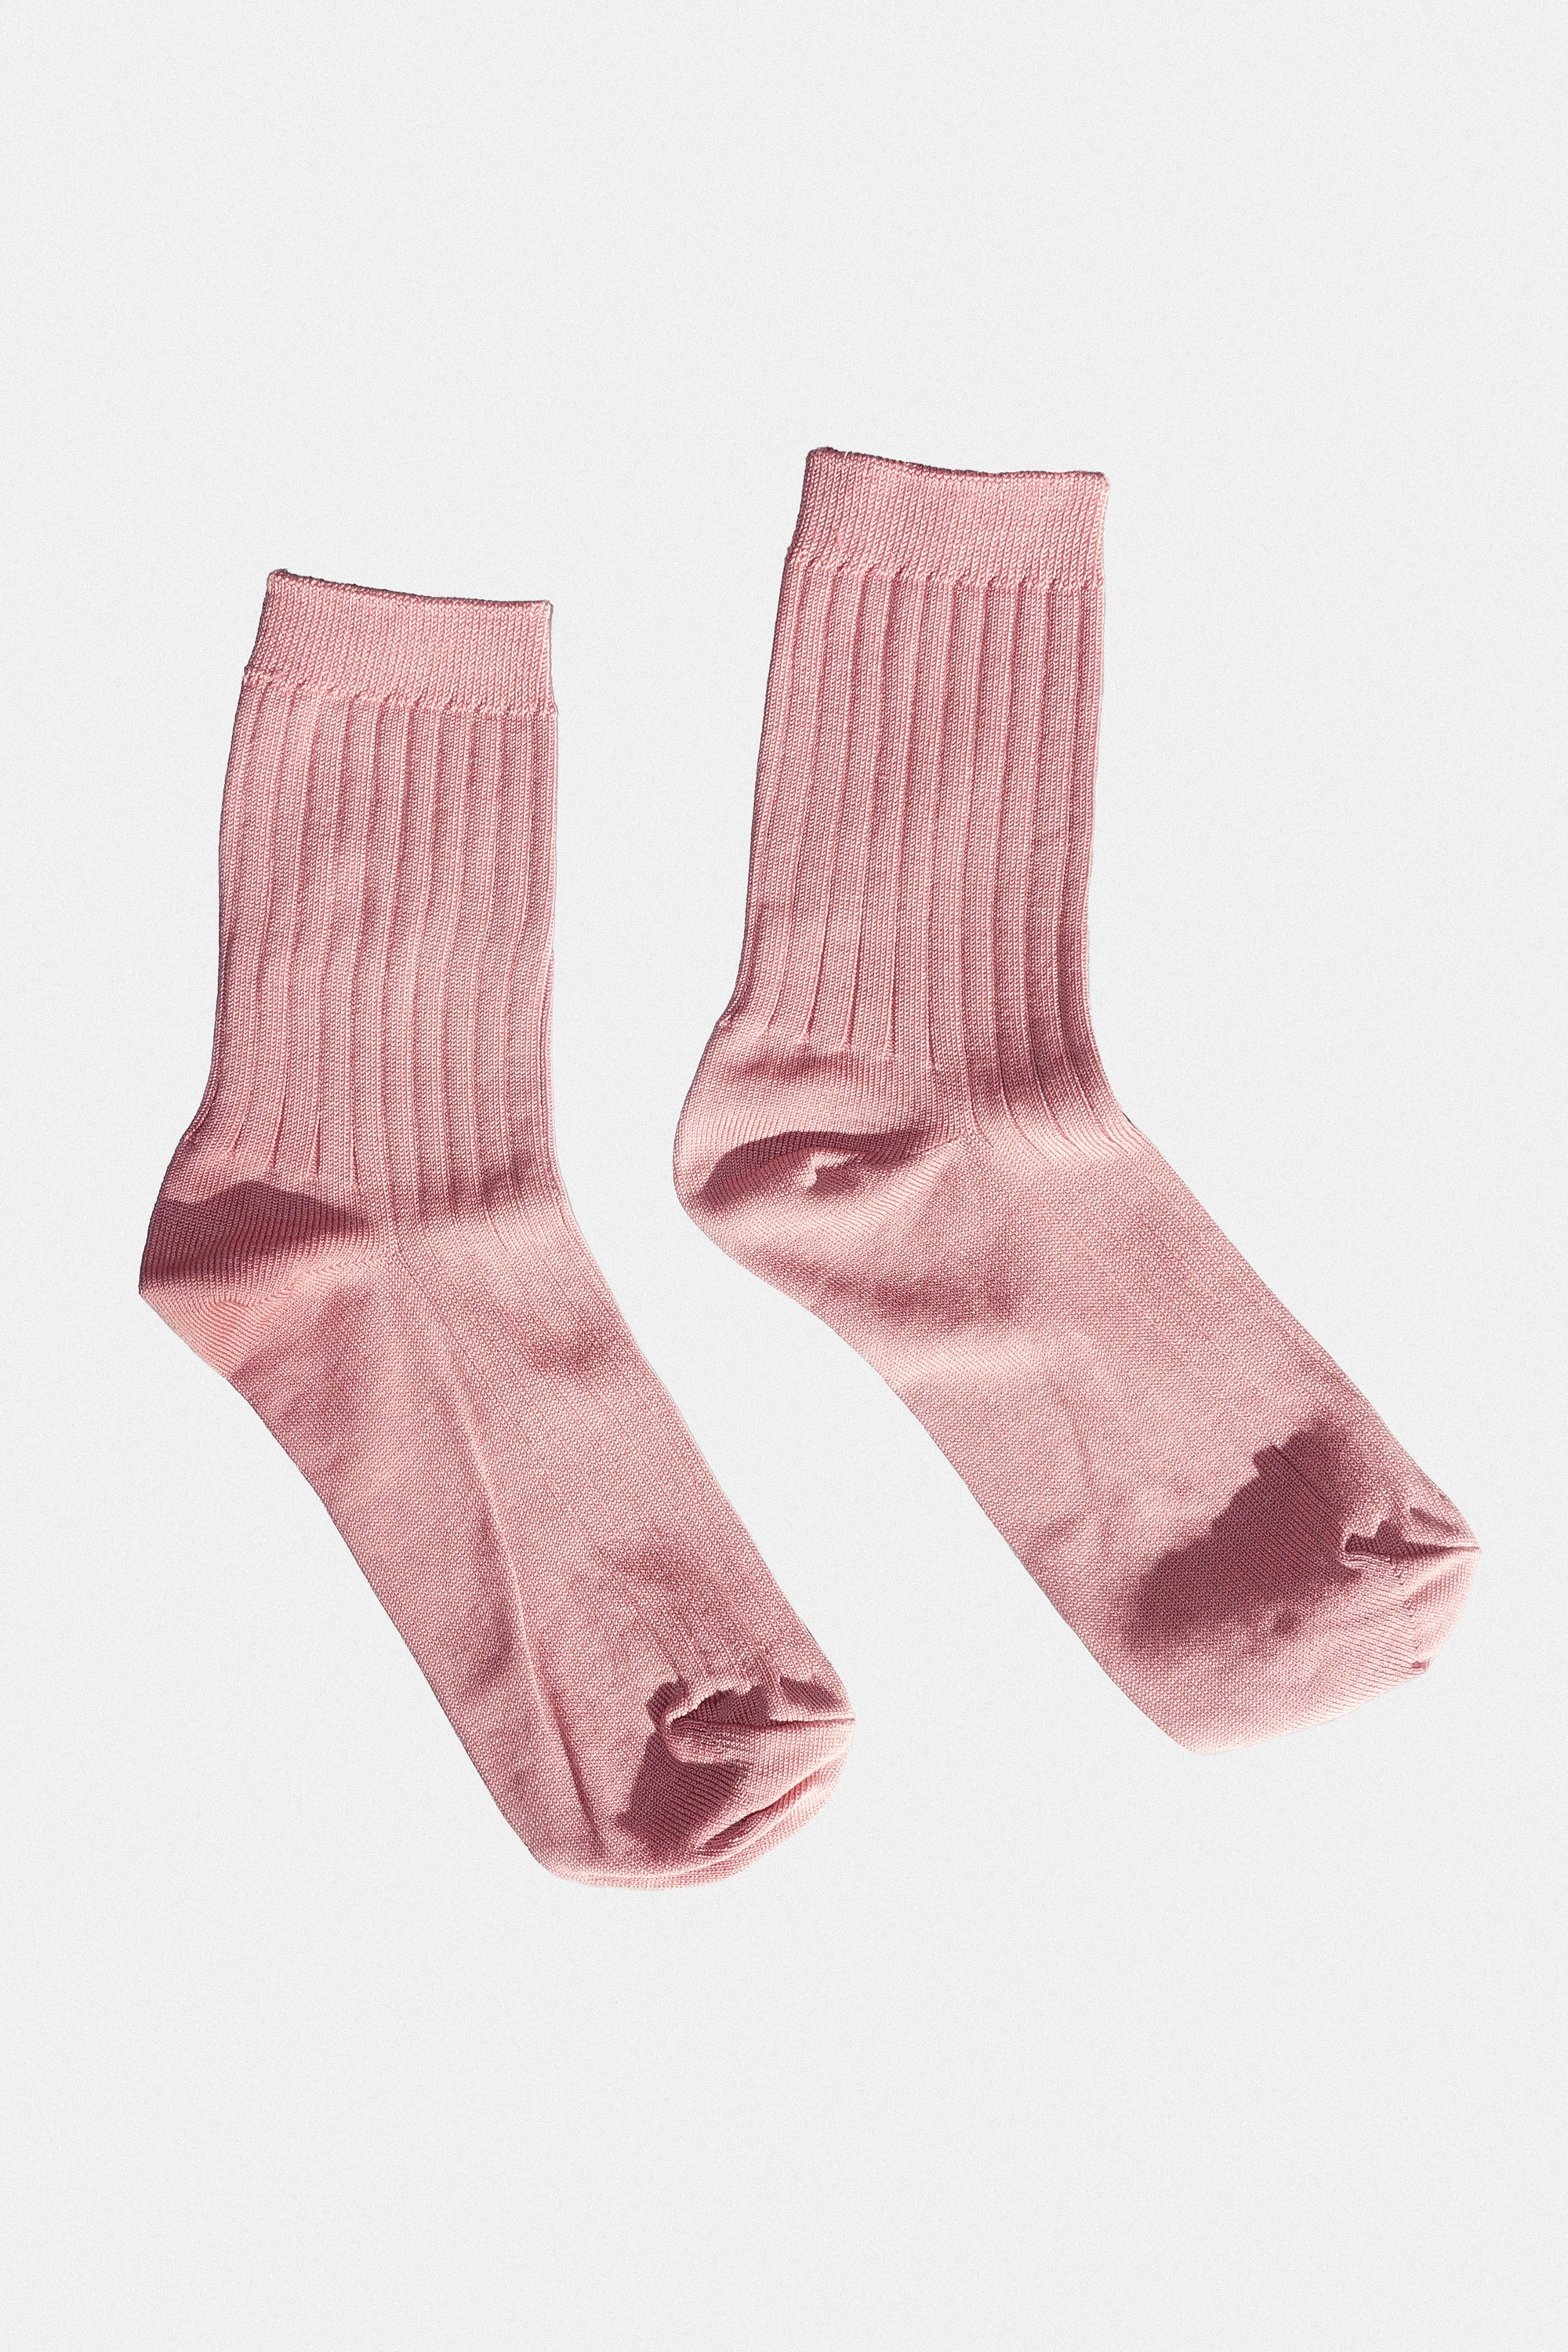 Her Socks in Desert Rose by Le Bon Shoppe